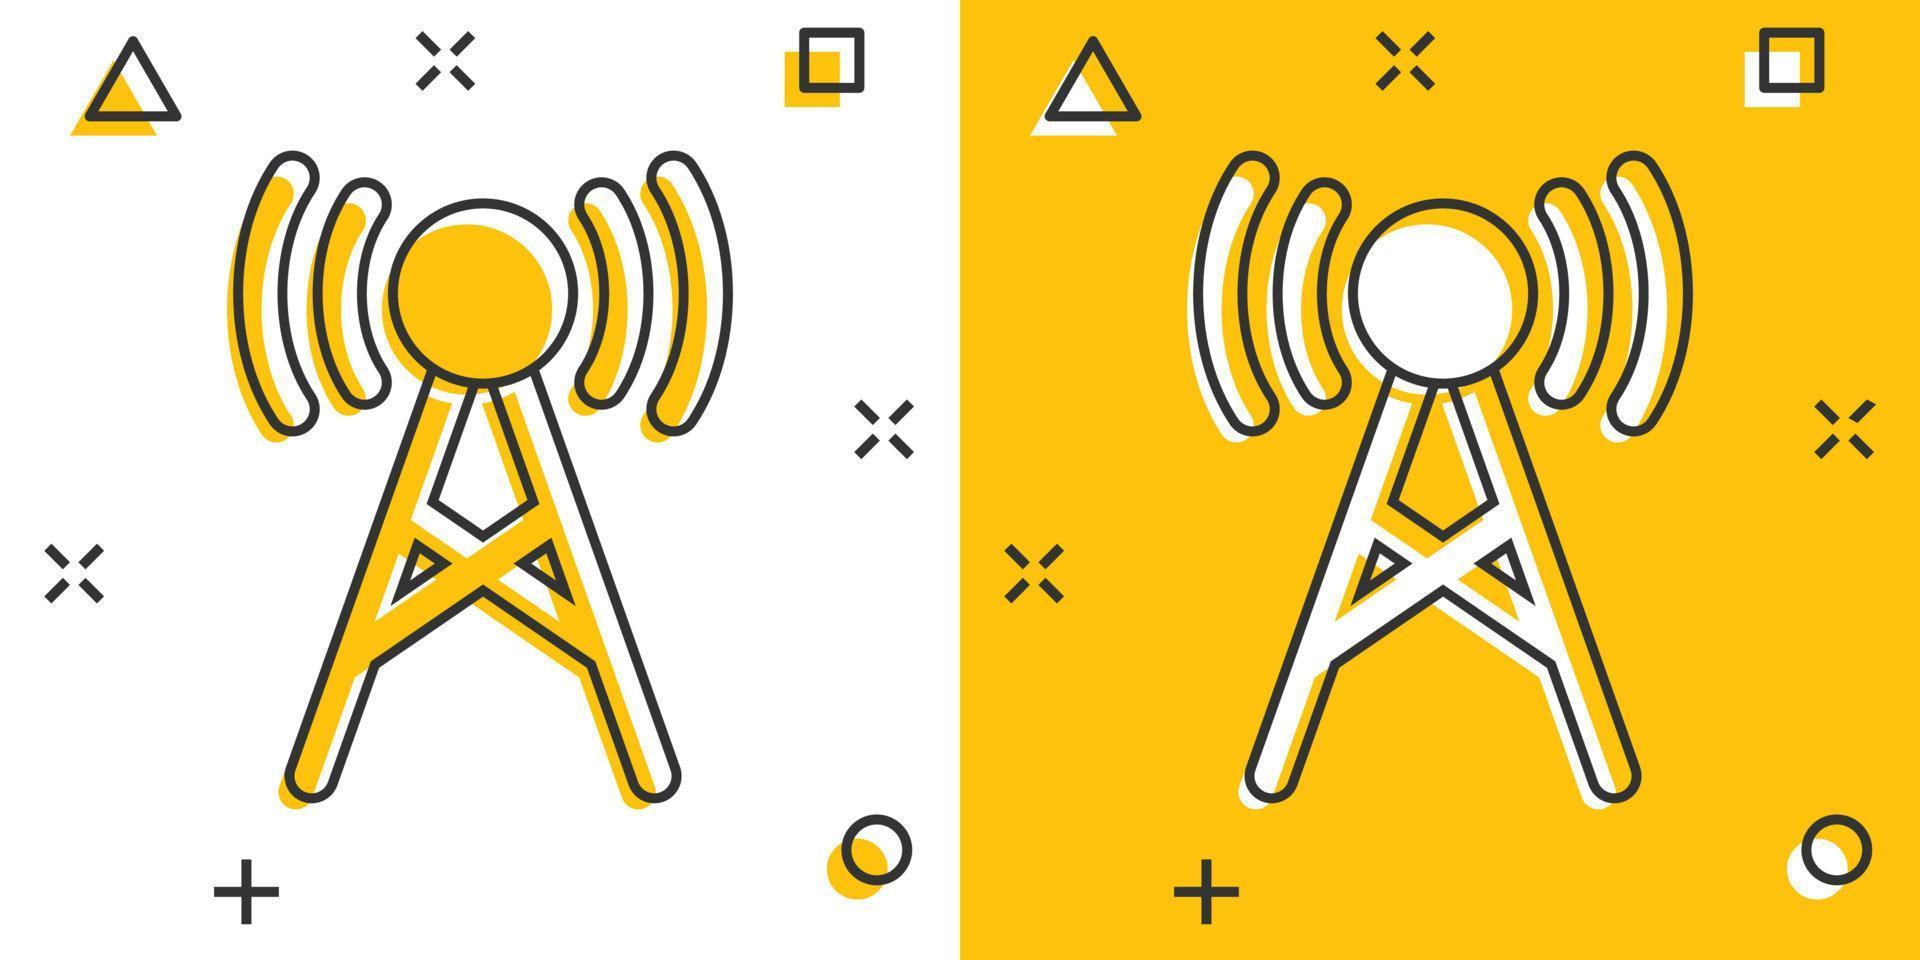 ícone de torre de antena em estilo cômico. radiodifusão ilustração vetorial dos desenhos animados sobre fundo branco isolado. conceito de negócio de efeito de respingo wi-fi. vetor